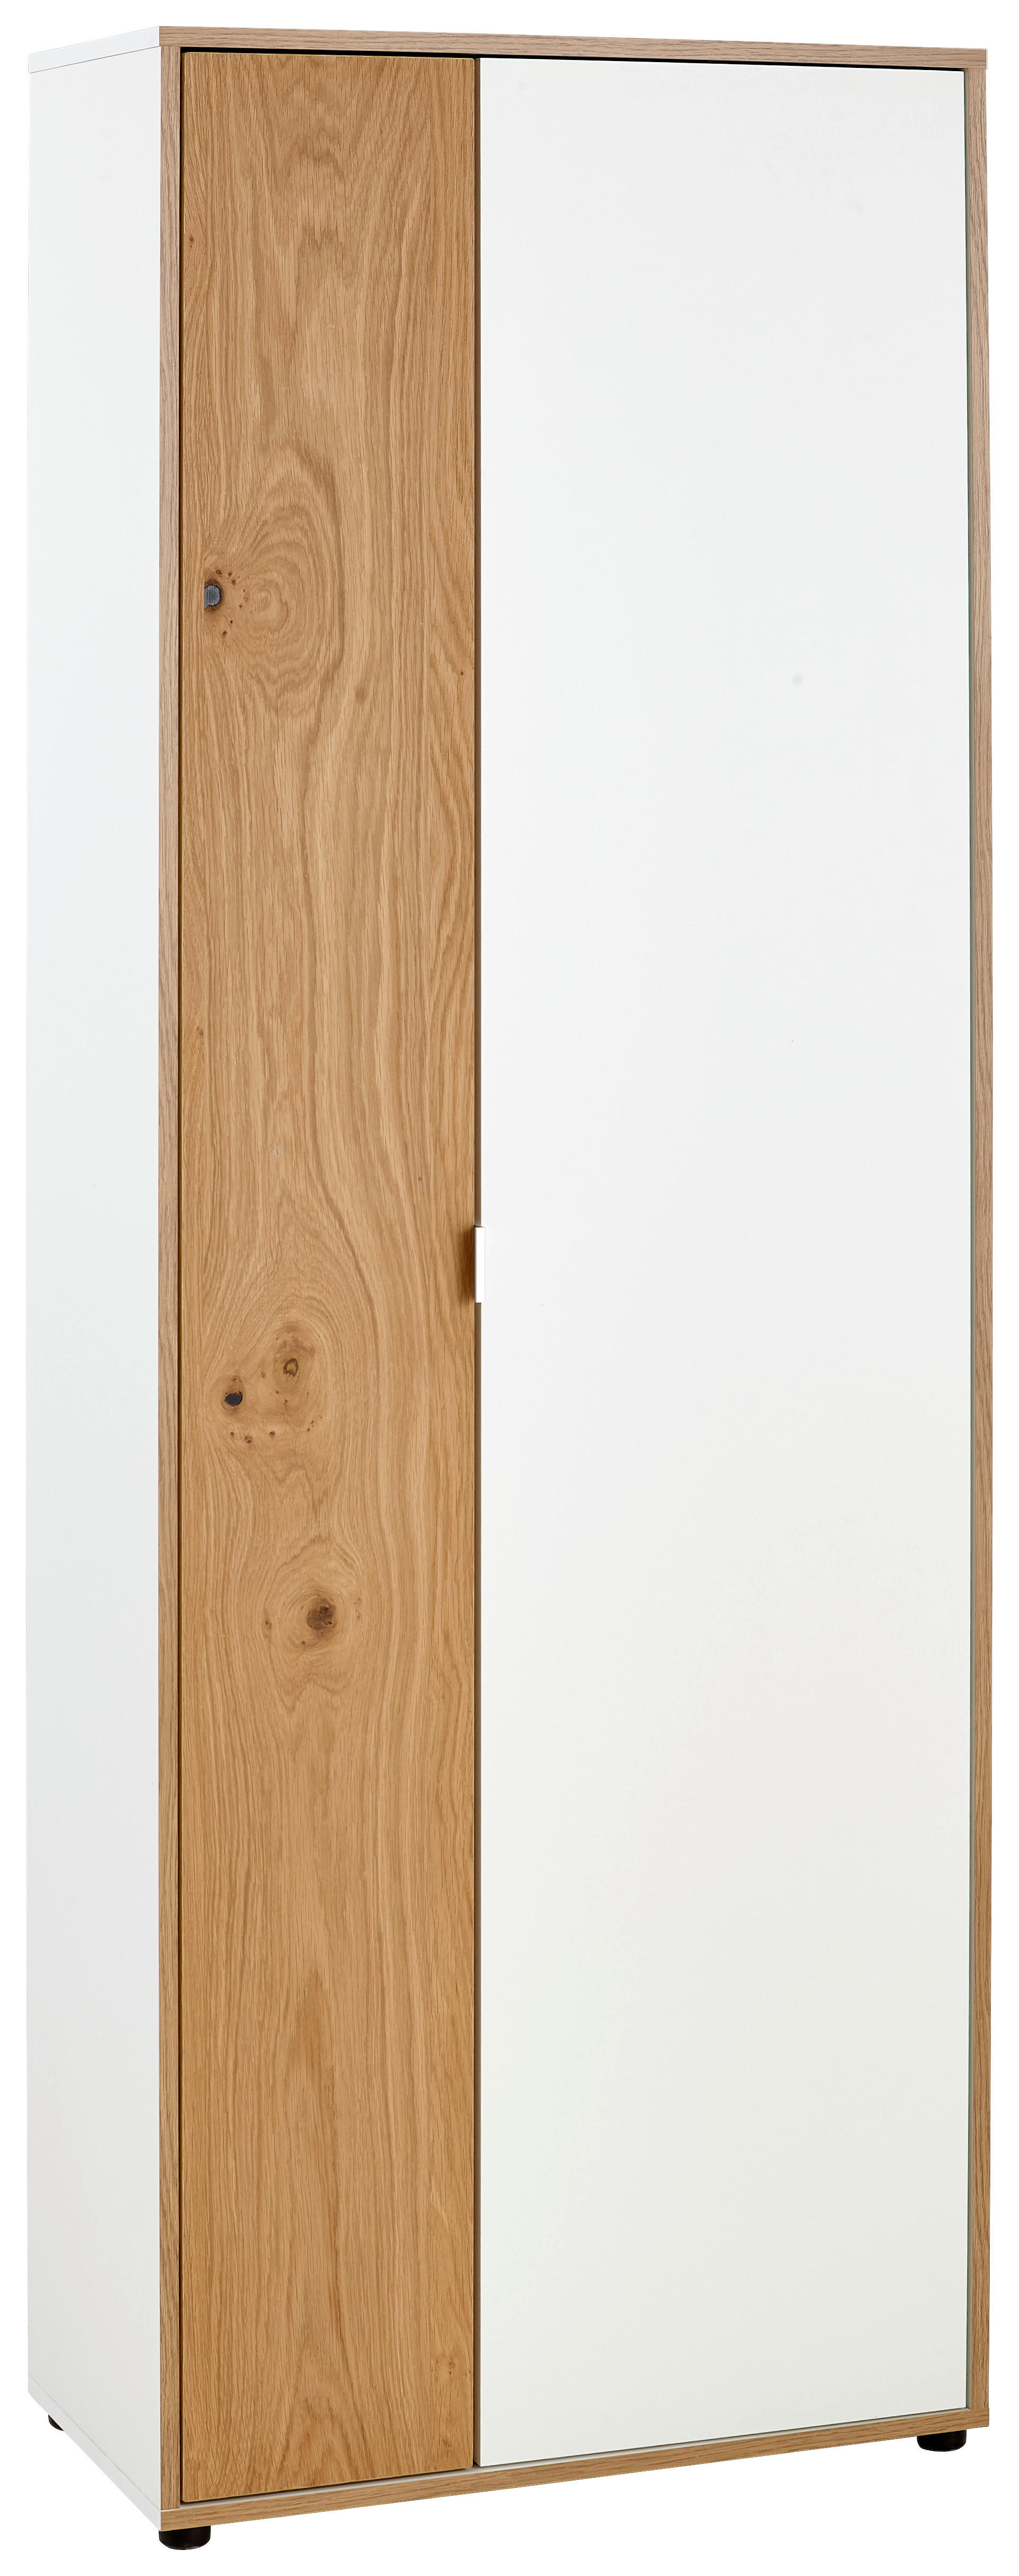 SKRINKA NA DOKUMENTY, divý dub, biela, farby duba, 67/186/35 cm - farby duba/biela, Konventionell, drevo/kompozitné drevo (67/186/35cm) - Livetastic